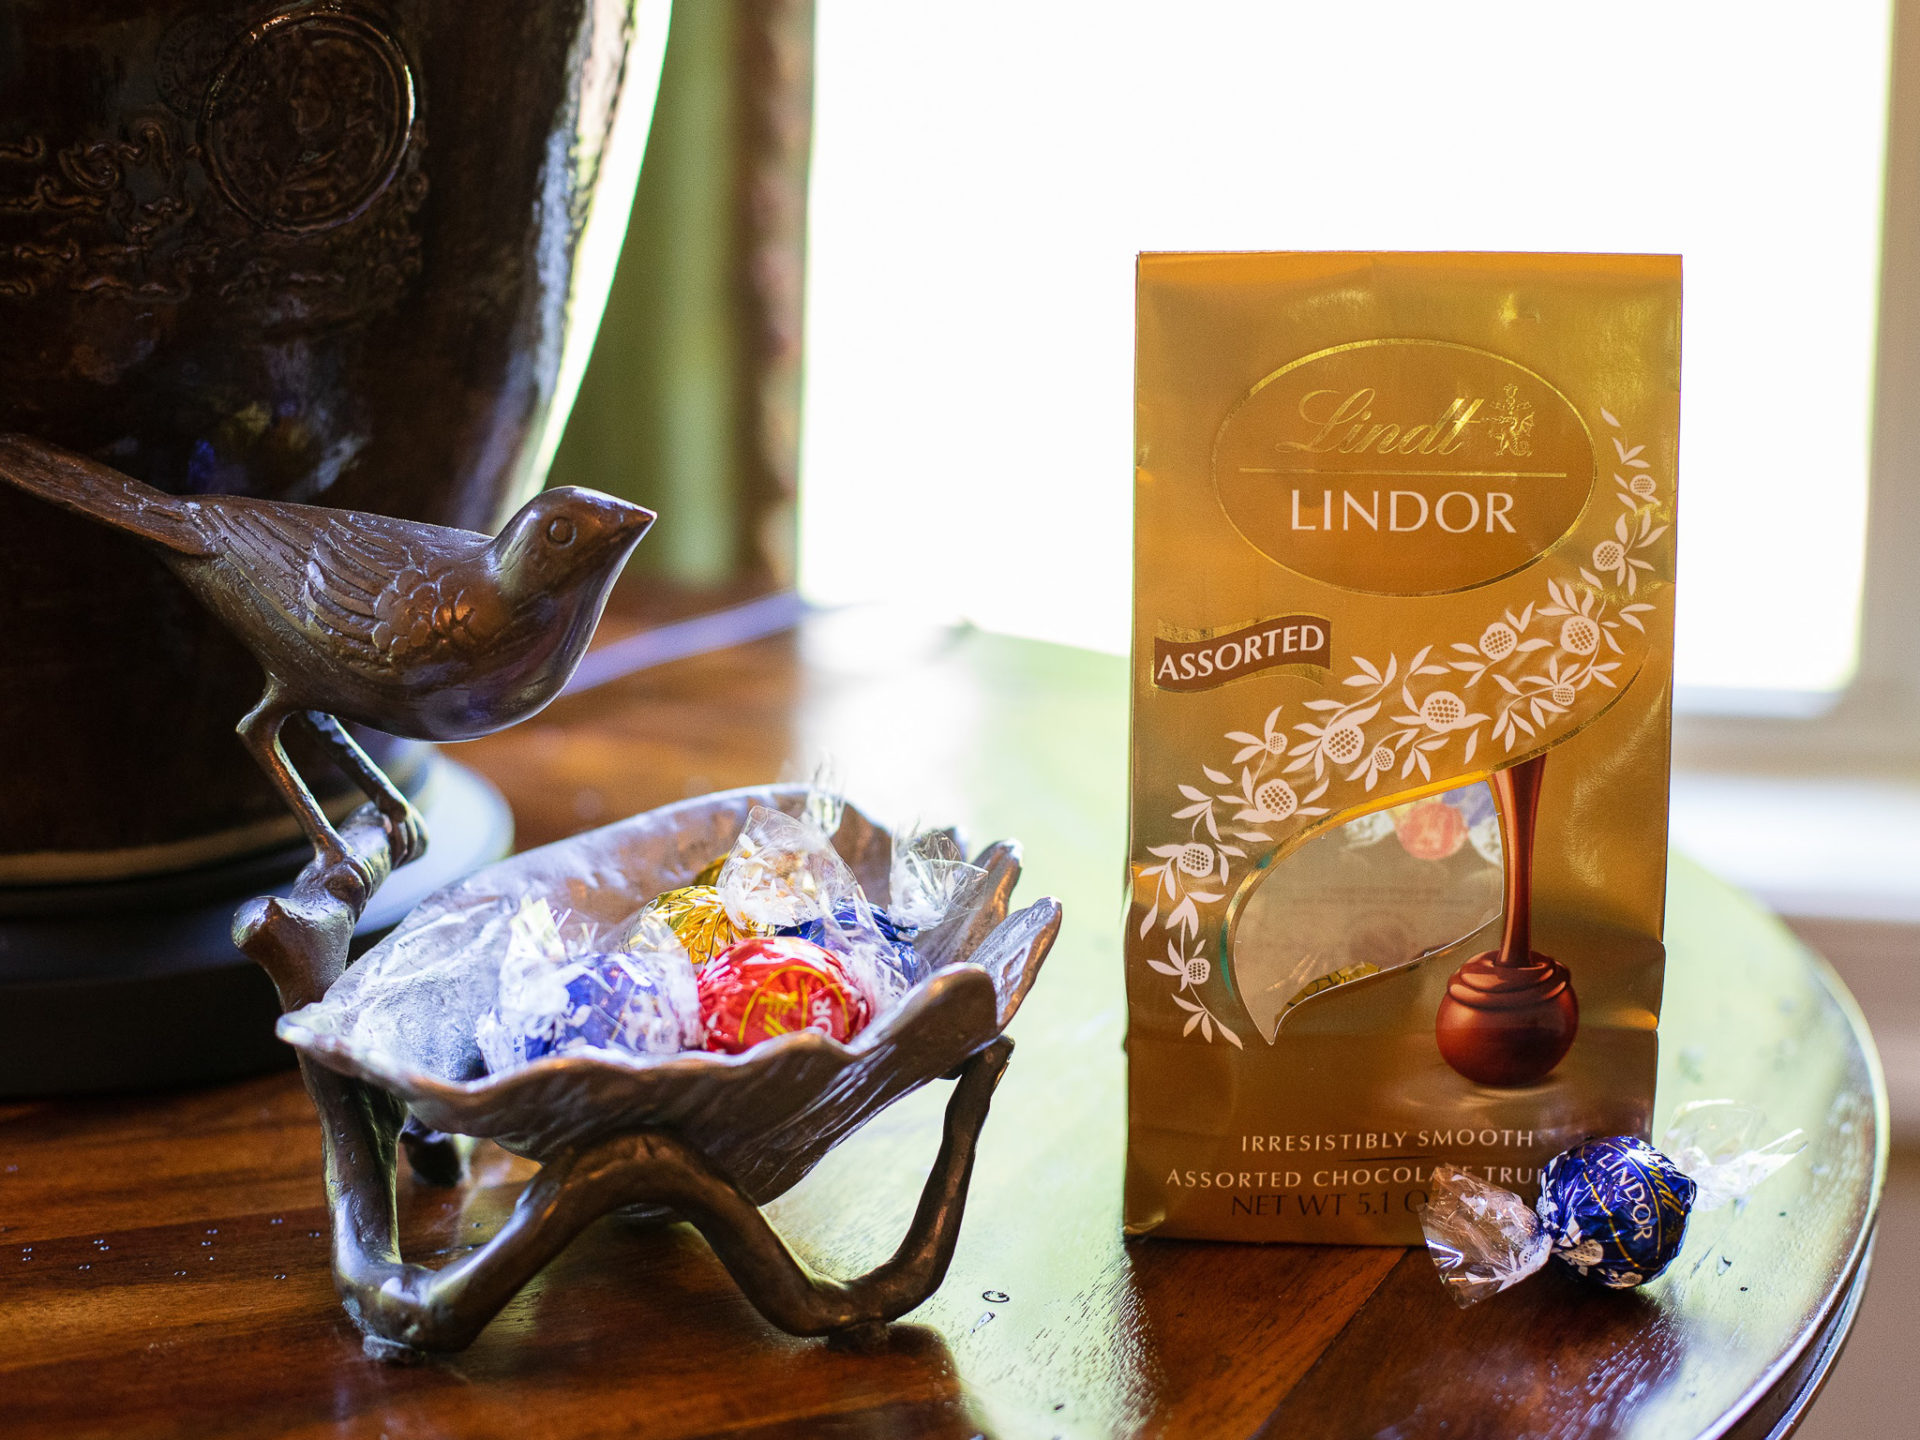 Lindt Lindor Chocolates Just $3.74 At Kroger